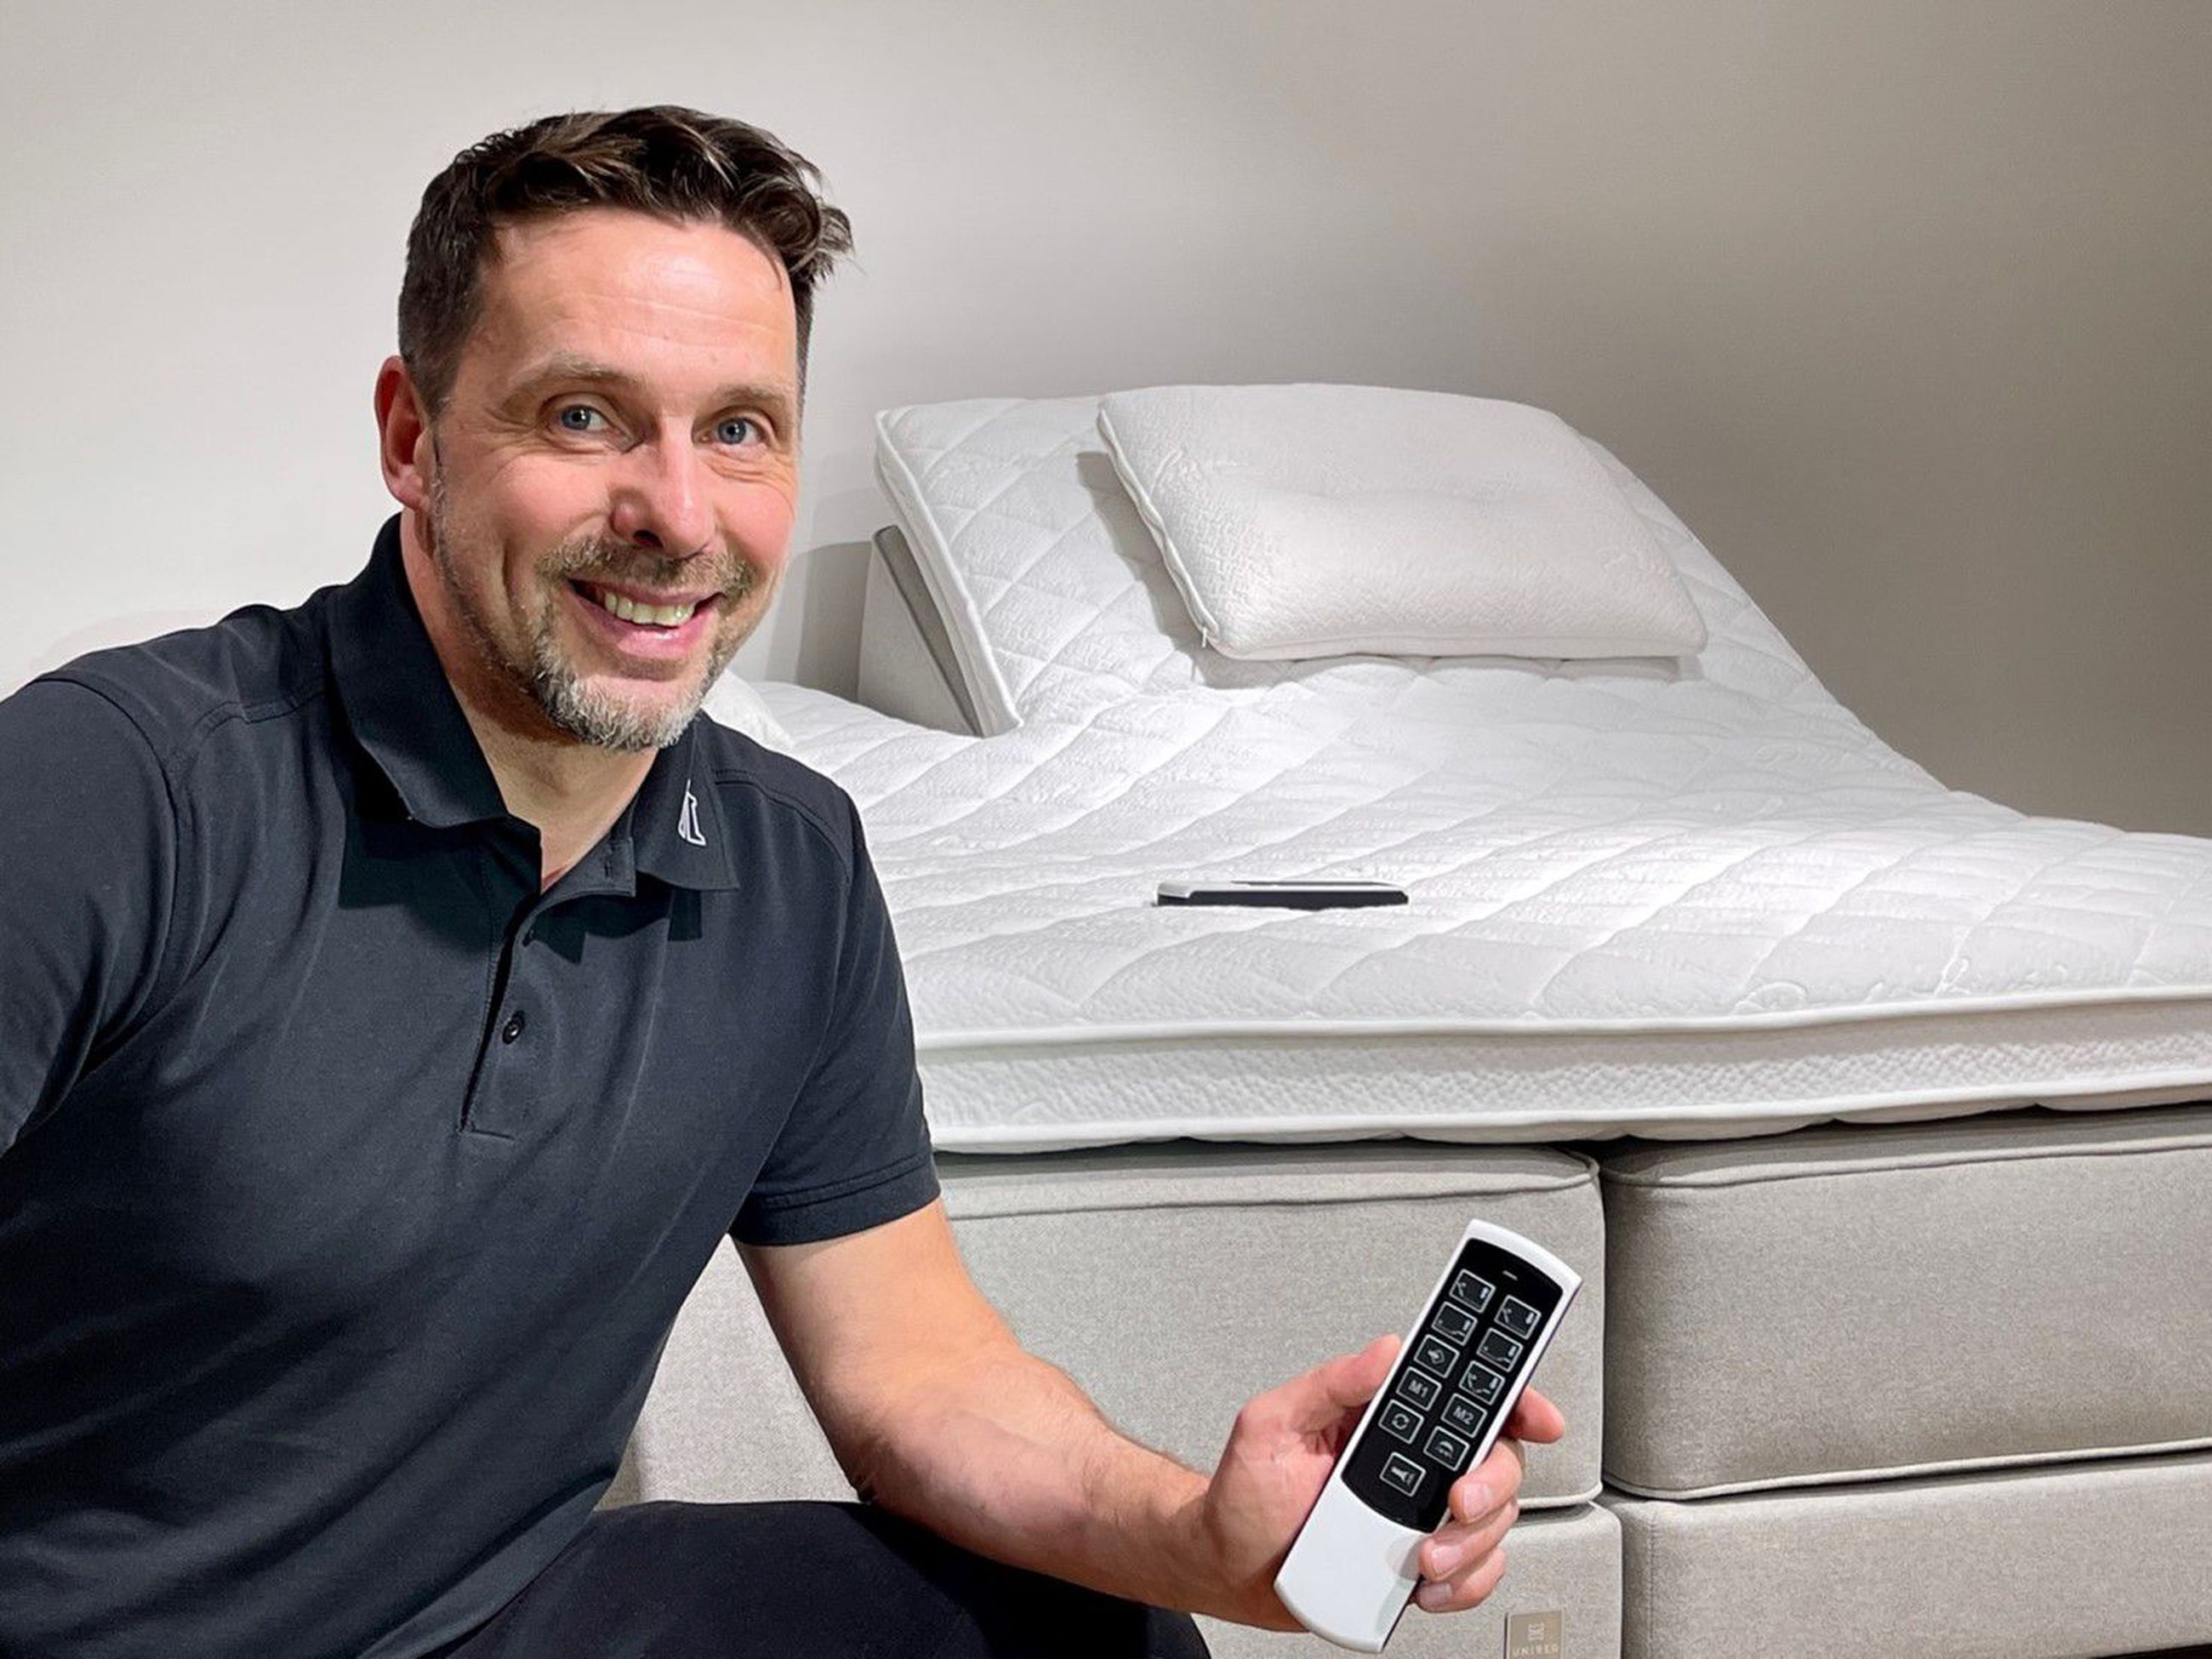 Fysioterapeutti Juha Mäntylän mukaan uusi sänkymalli tarjoaa entistäkin paremman mahdollisuuden palvella yksilöllisesti kaikkia asiakkaita. Laajasta Unibed- mallistosta löytyy jokaiselle se juuri oikea vaihtoehto. Sängyn sovittamiseen saa aina ammattilaisen jakamattoman avun ja opastuksen.